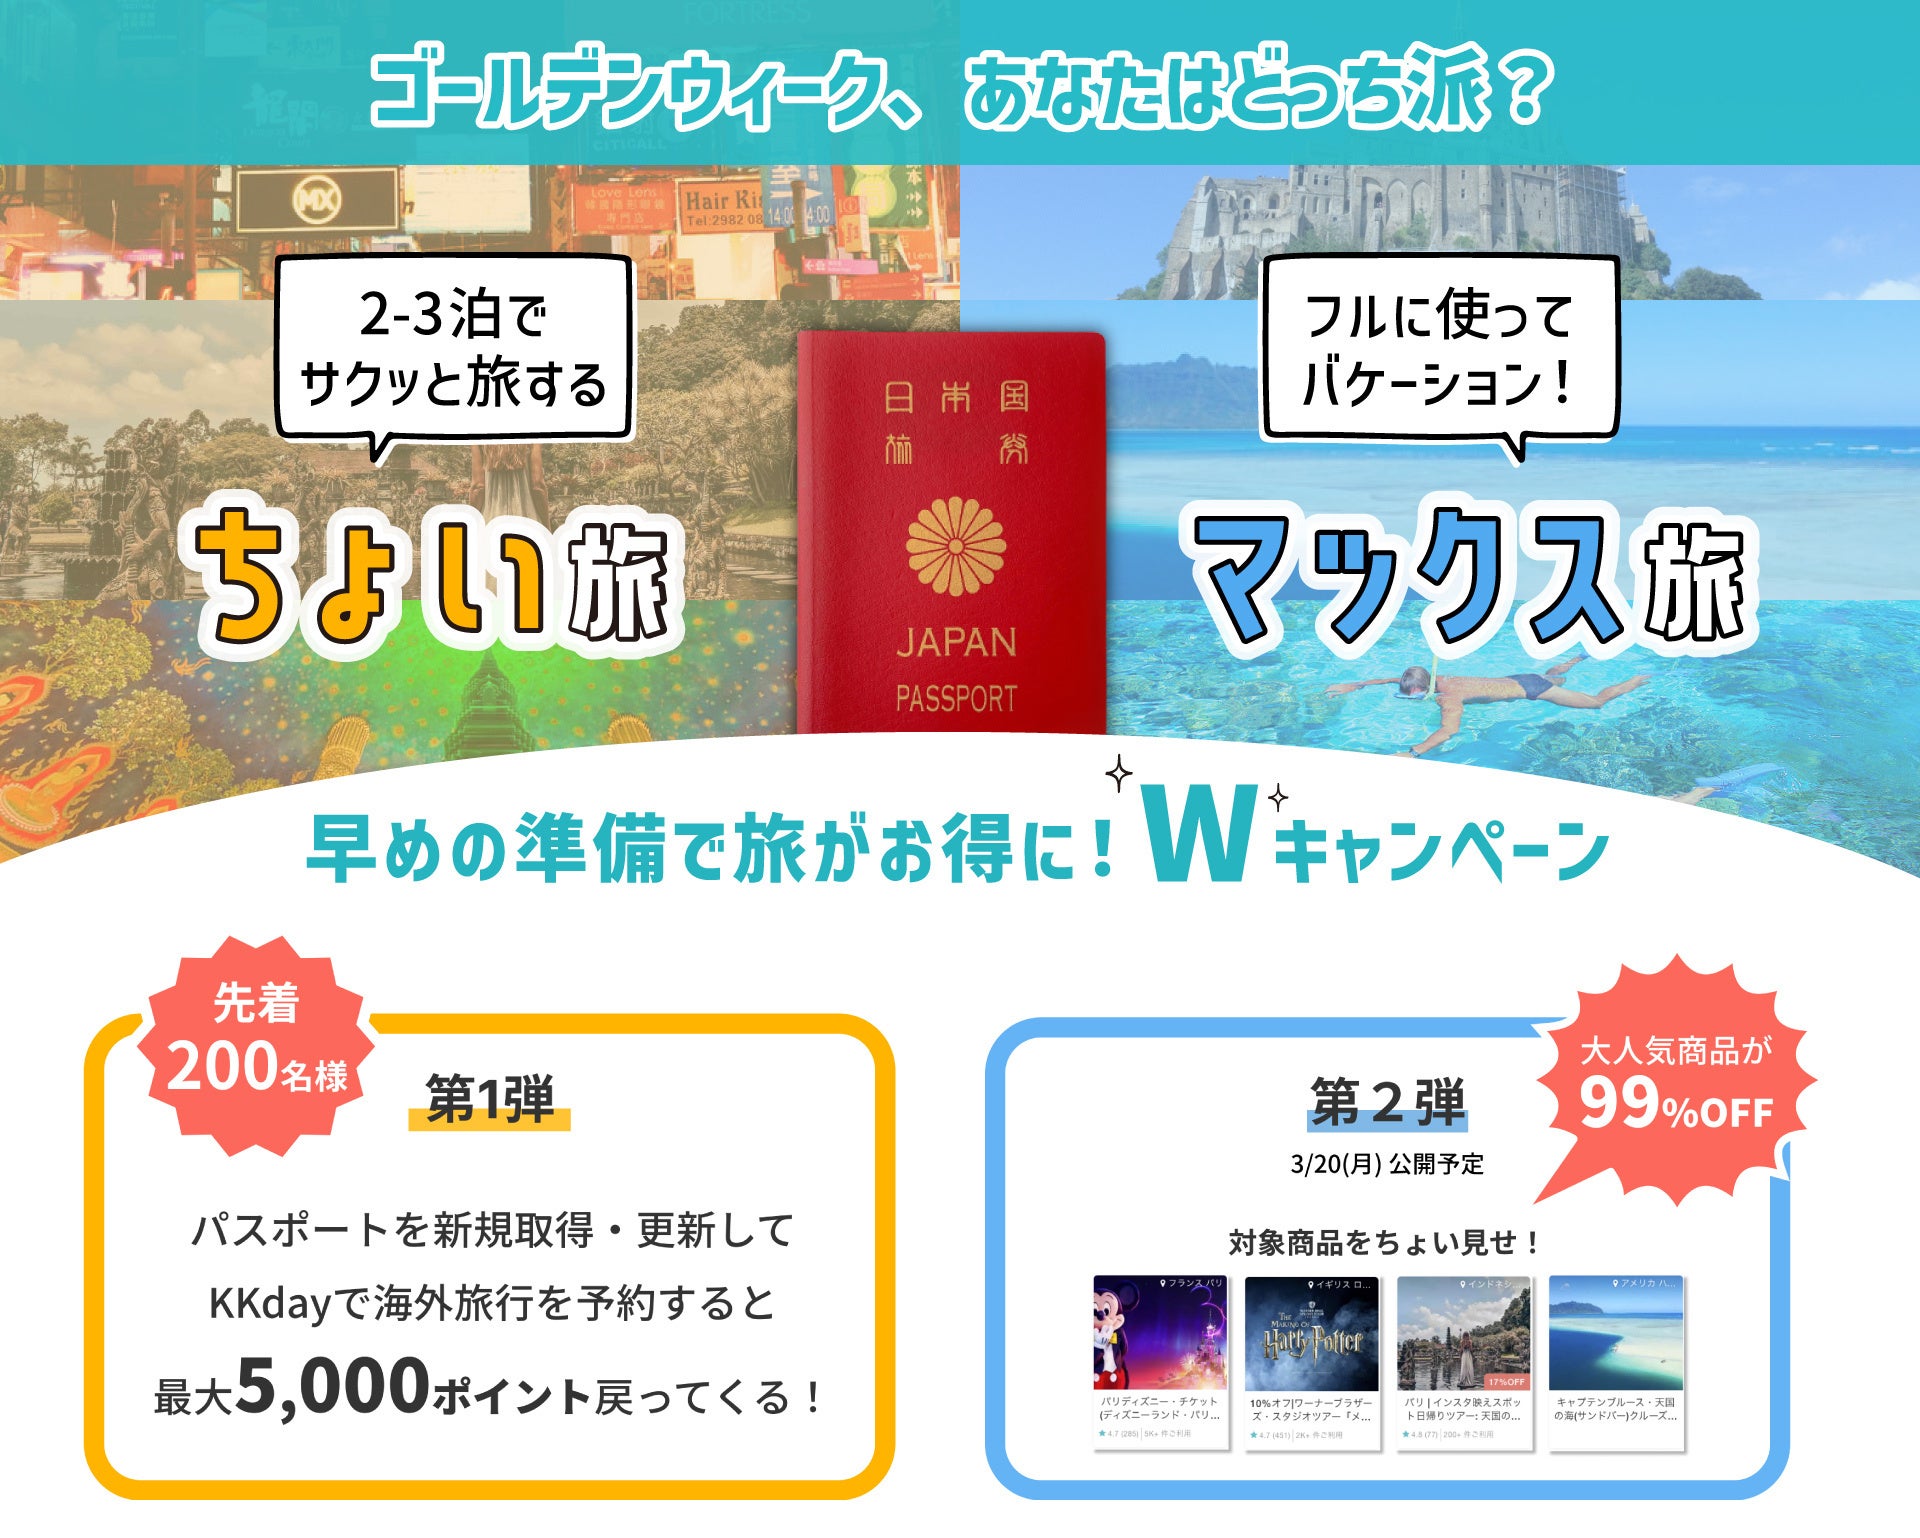 テレビ東京『ワールド・ビジネス・サテライト』にて、KKdayのパスポート取得キャンペーンが特集されました